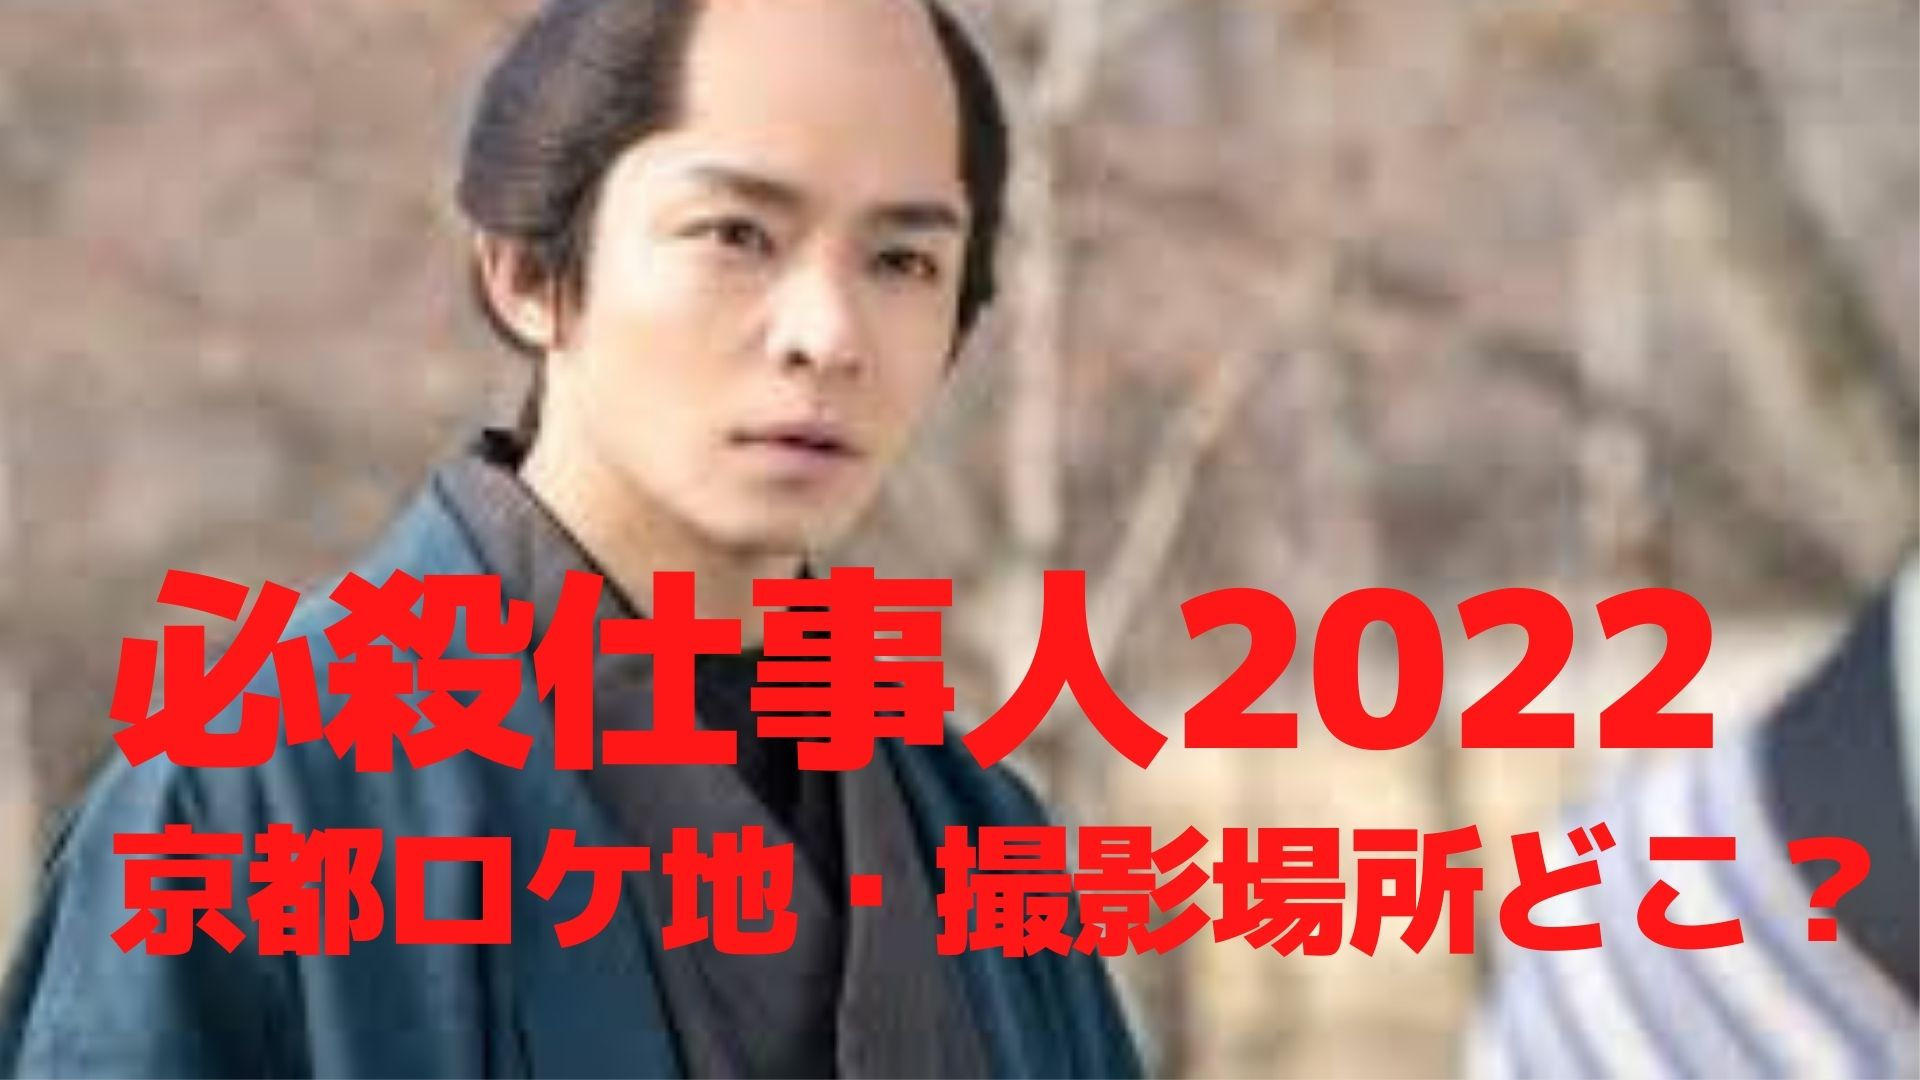 hissatsu-worker-2022